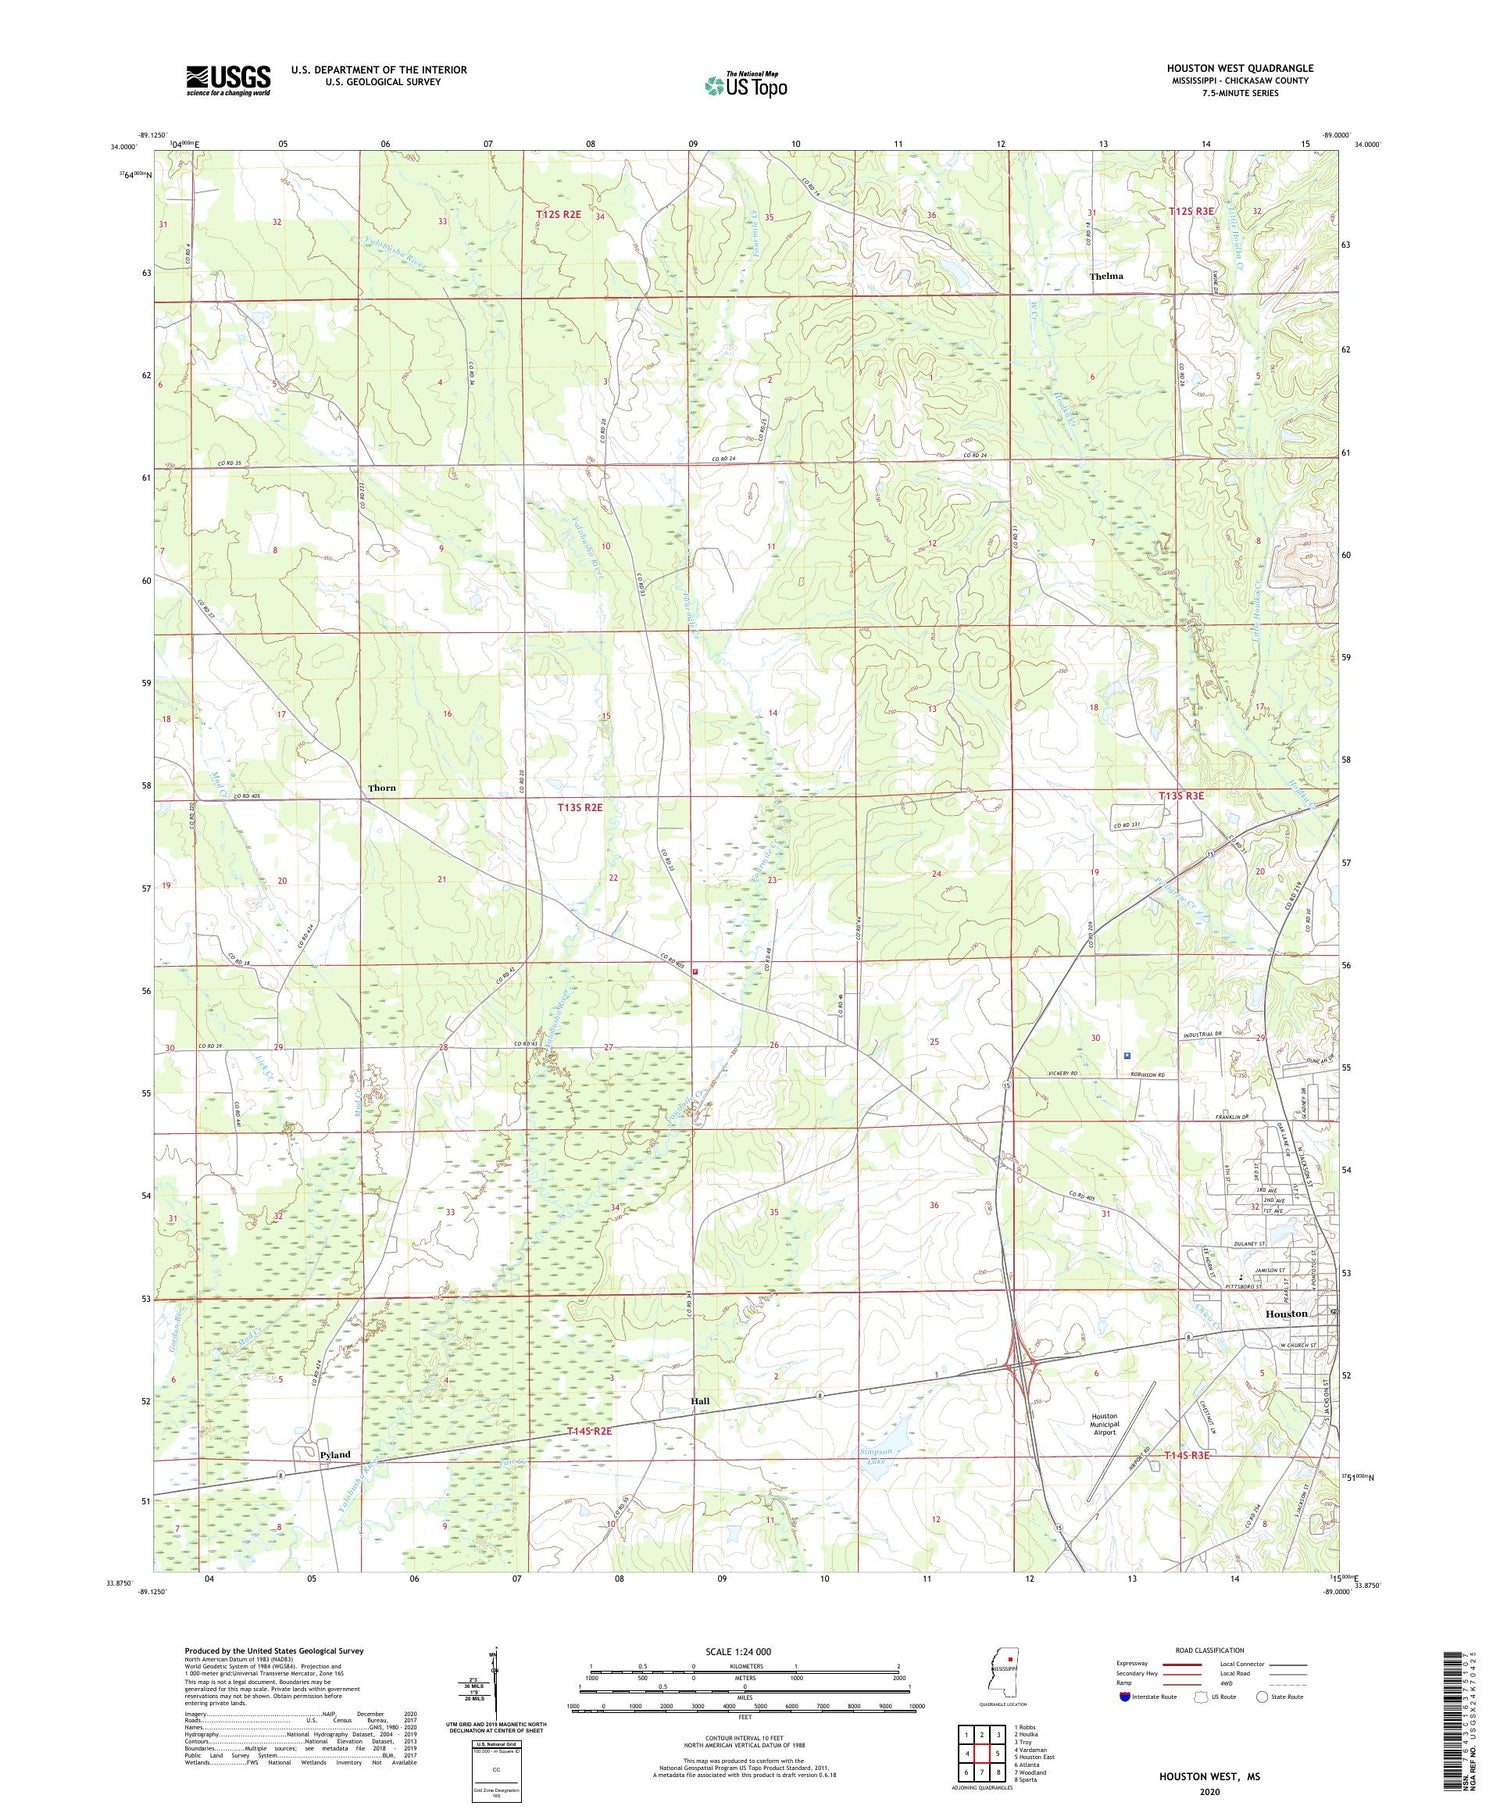 Houston West Mississippi US Topo Map Image